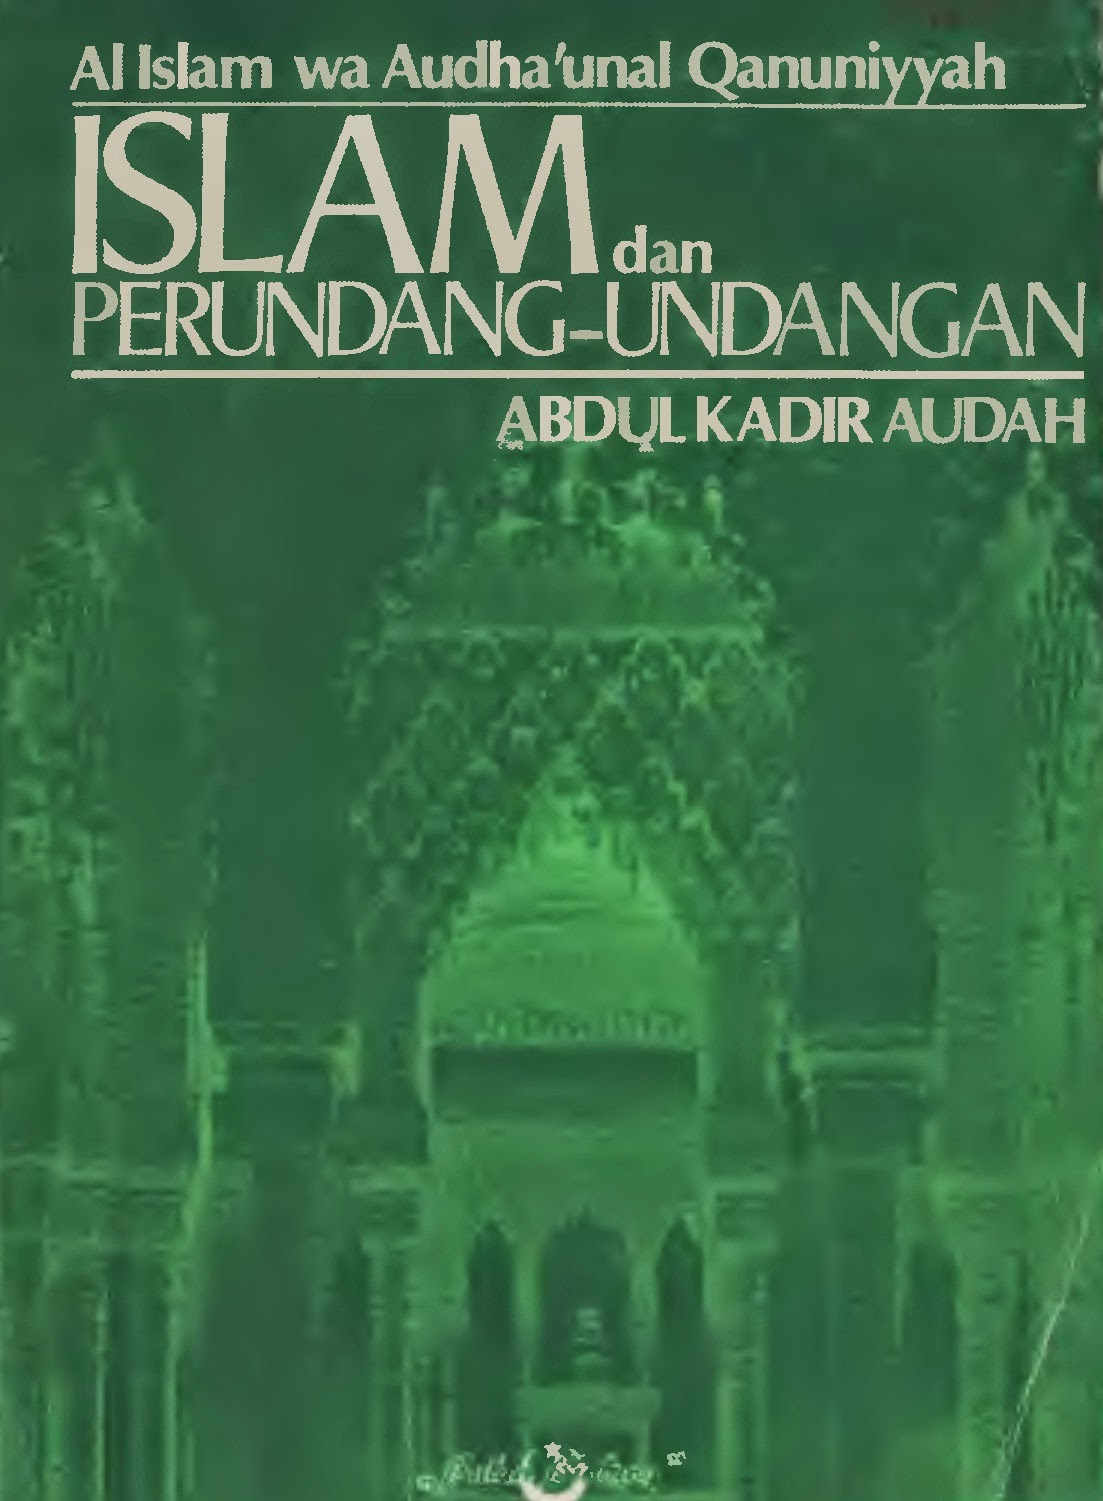 Islam dan perundang-undangan - Abdul Qodir Audhoh